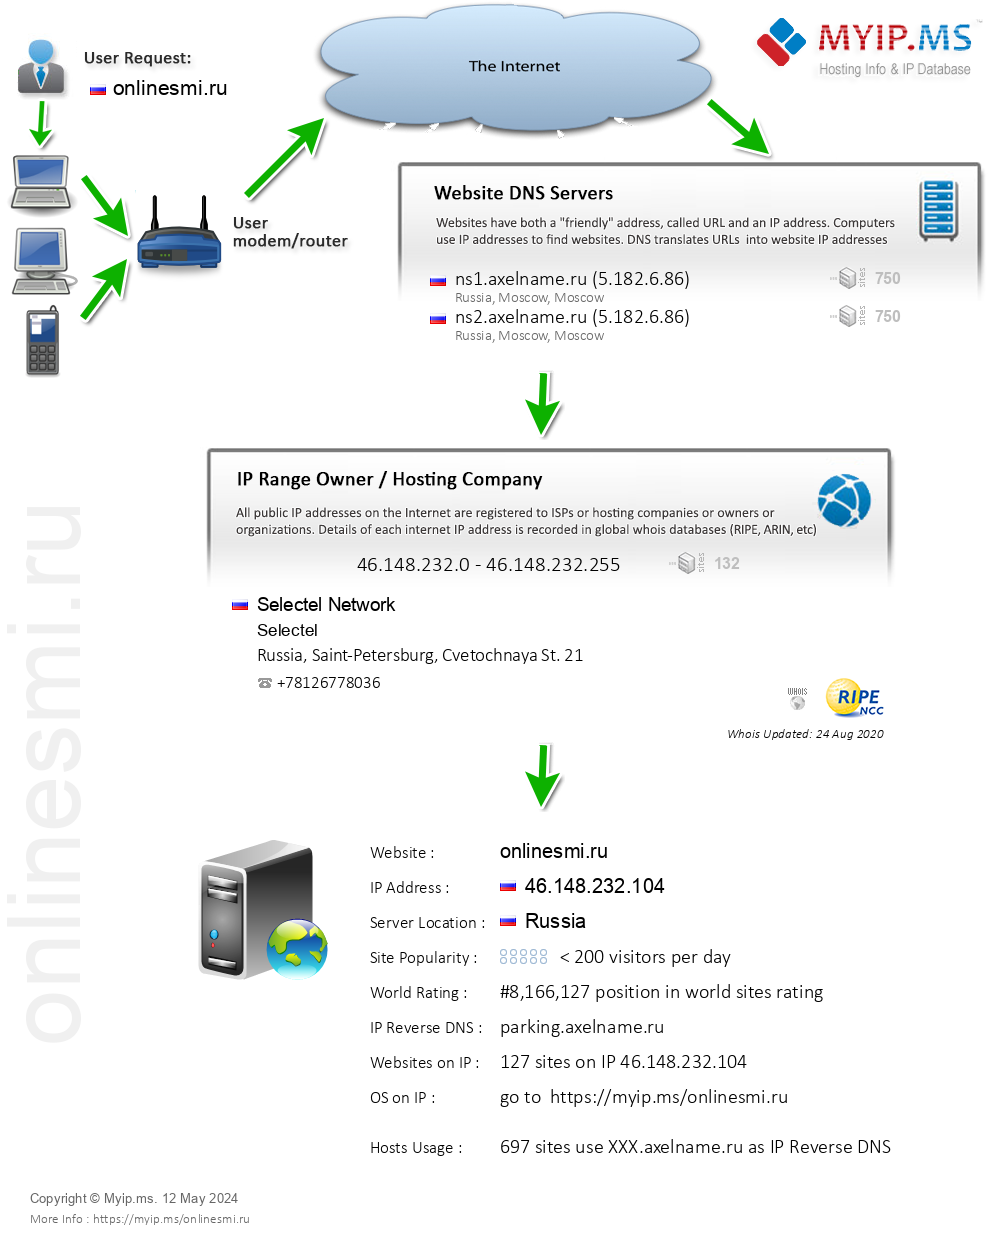 Onlinesmi.ru - Website Hosting Visual IP Diagram